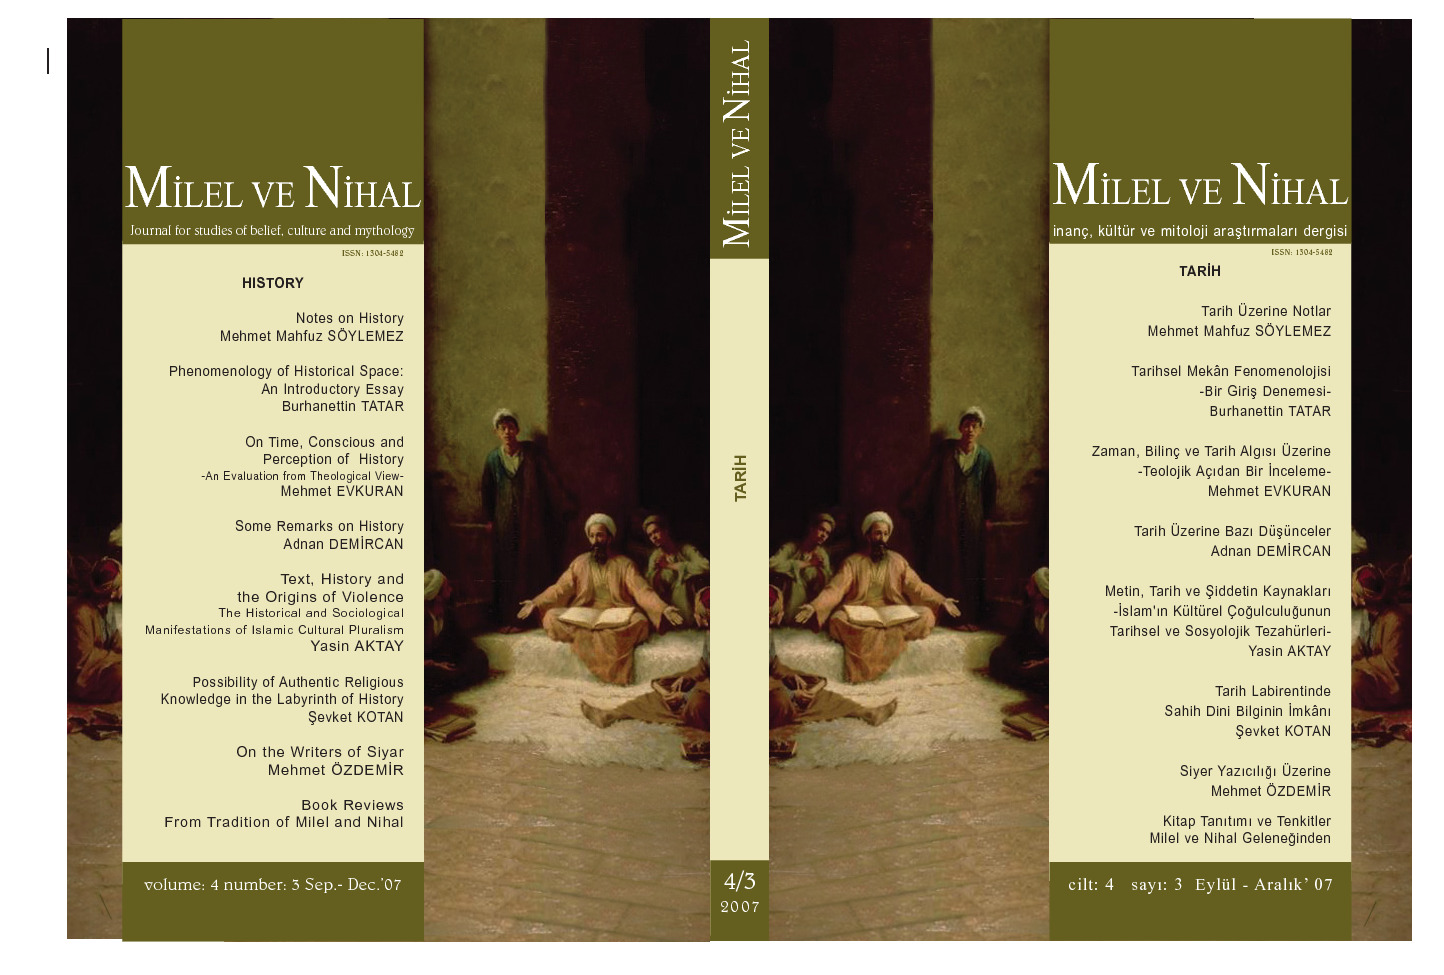 Milel Ve Nihal-Inanc-Kültür-Mitoloji Araşdırmaları Dergisi-4.Say-Tarix-2007-191s